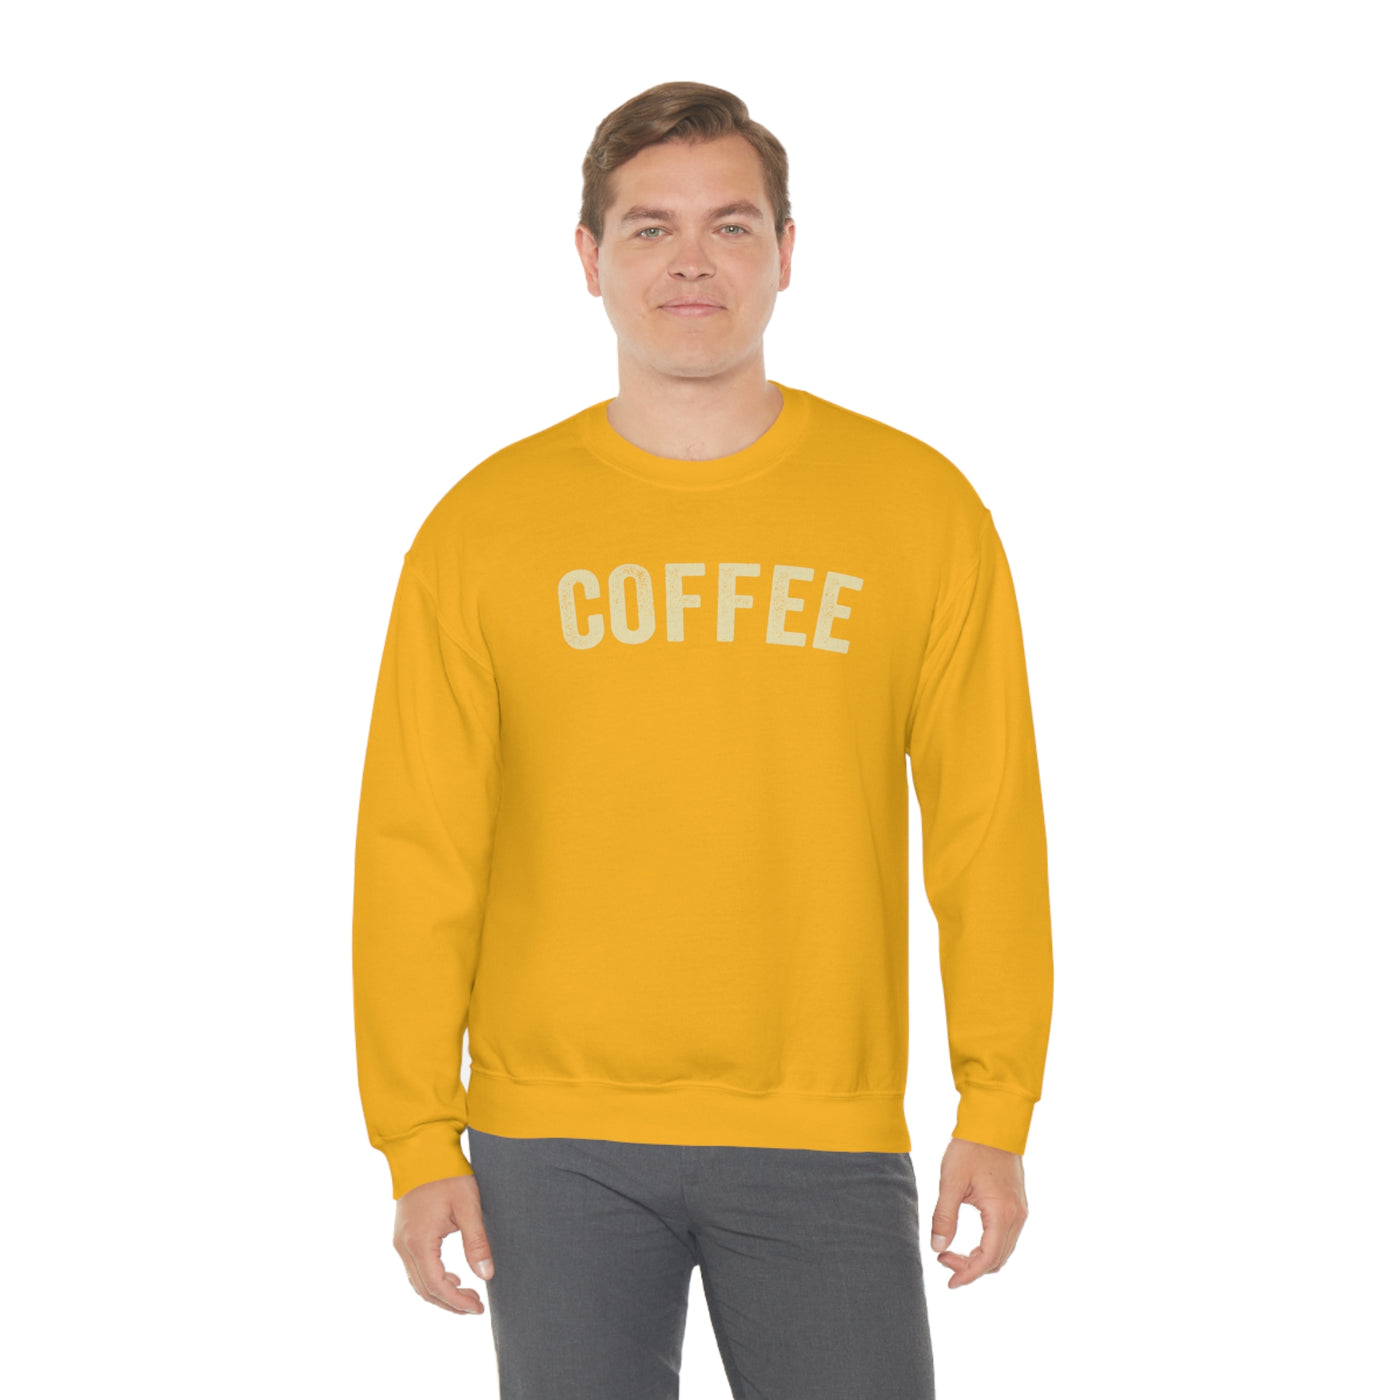 COFFEE Crewneck Sweatshirt